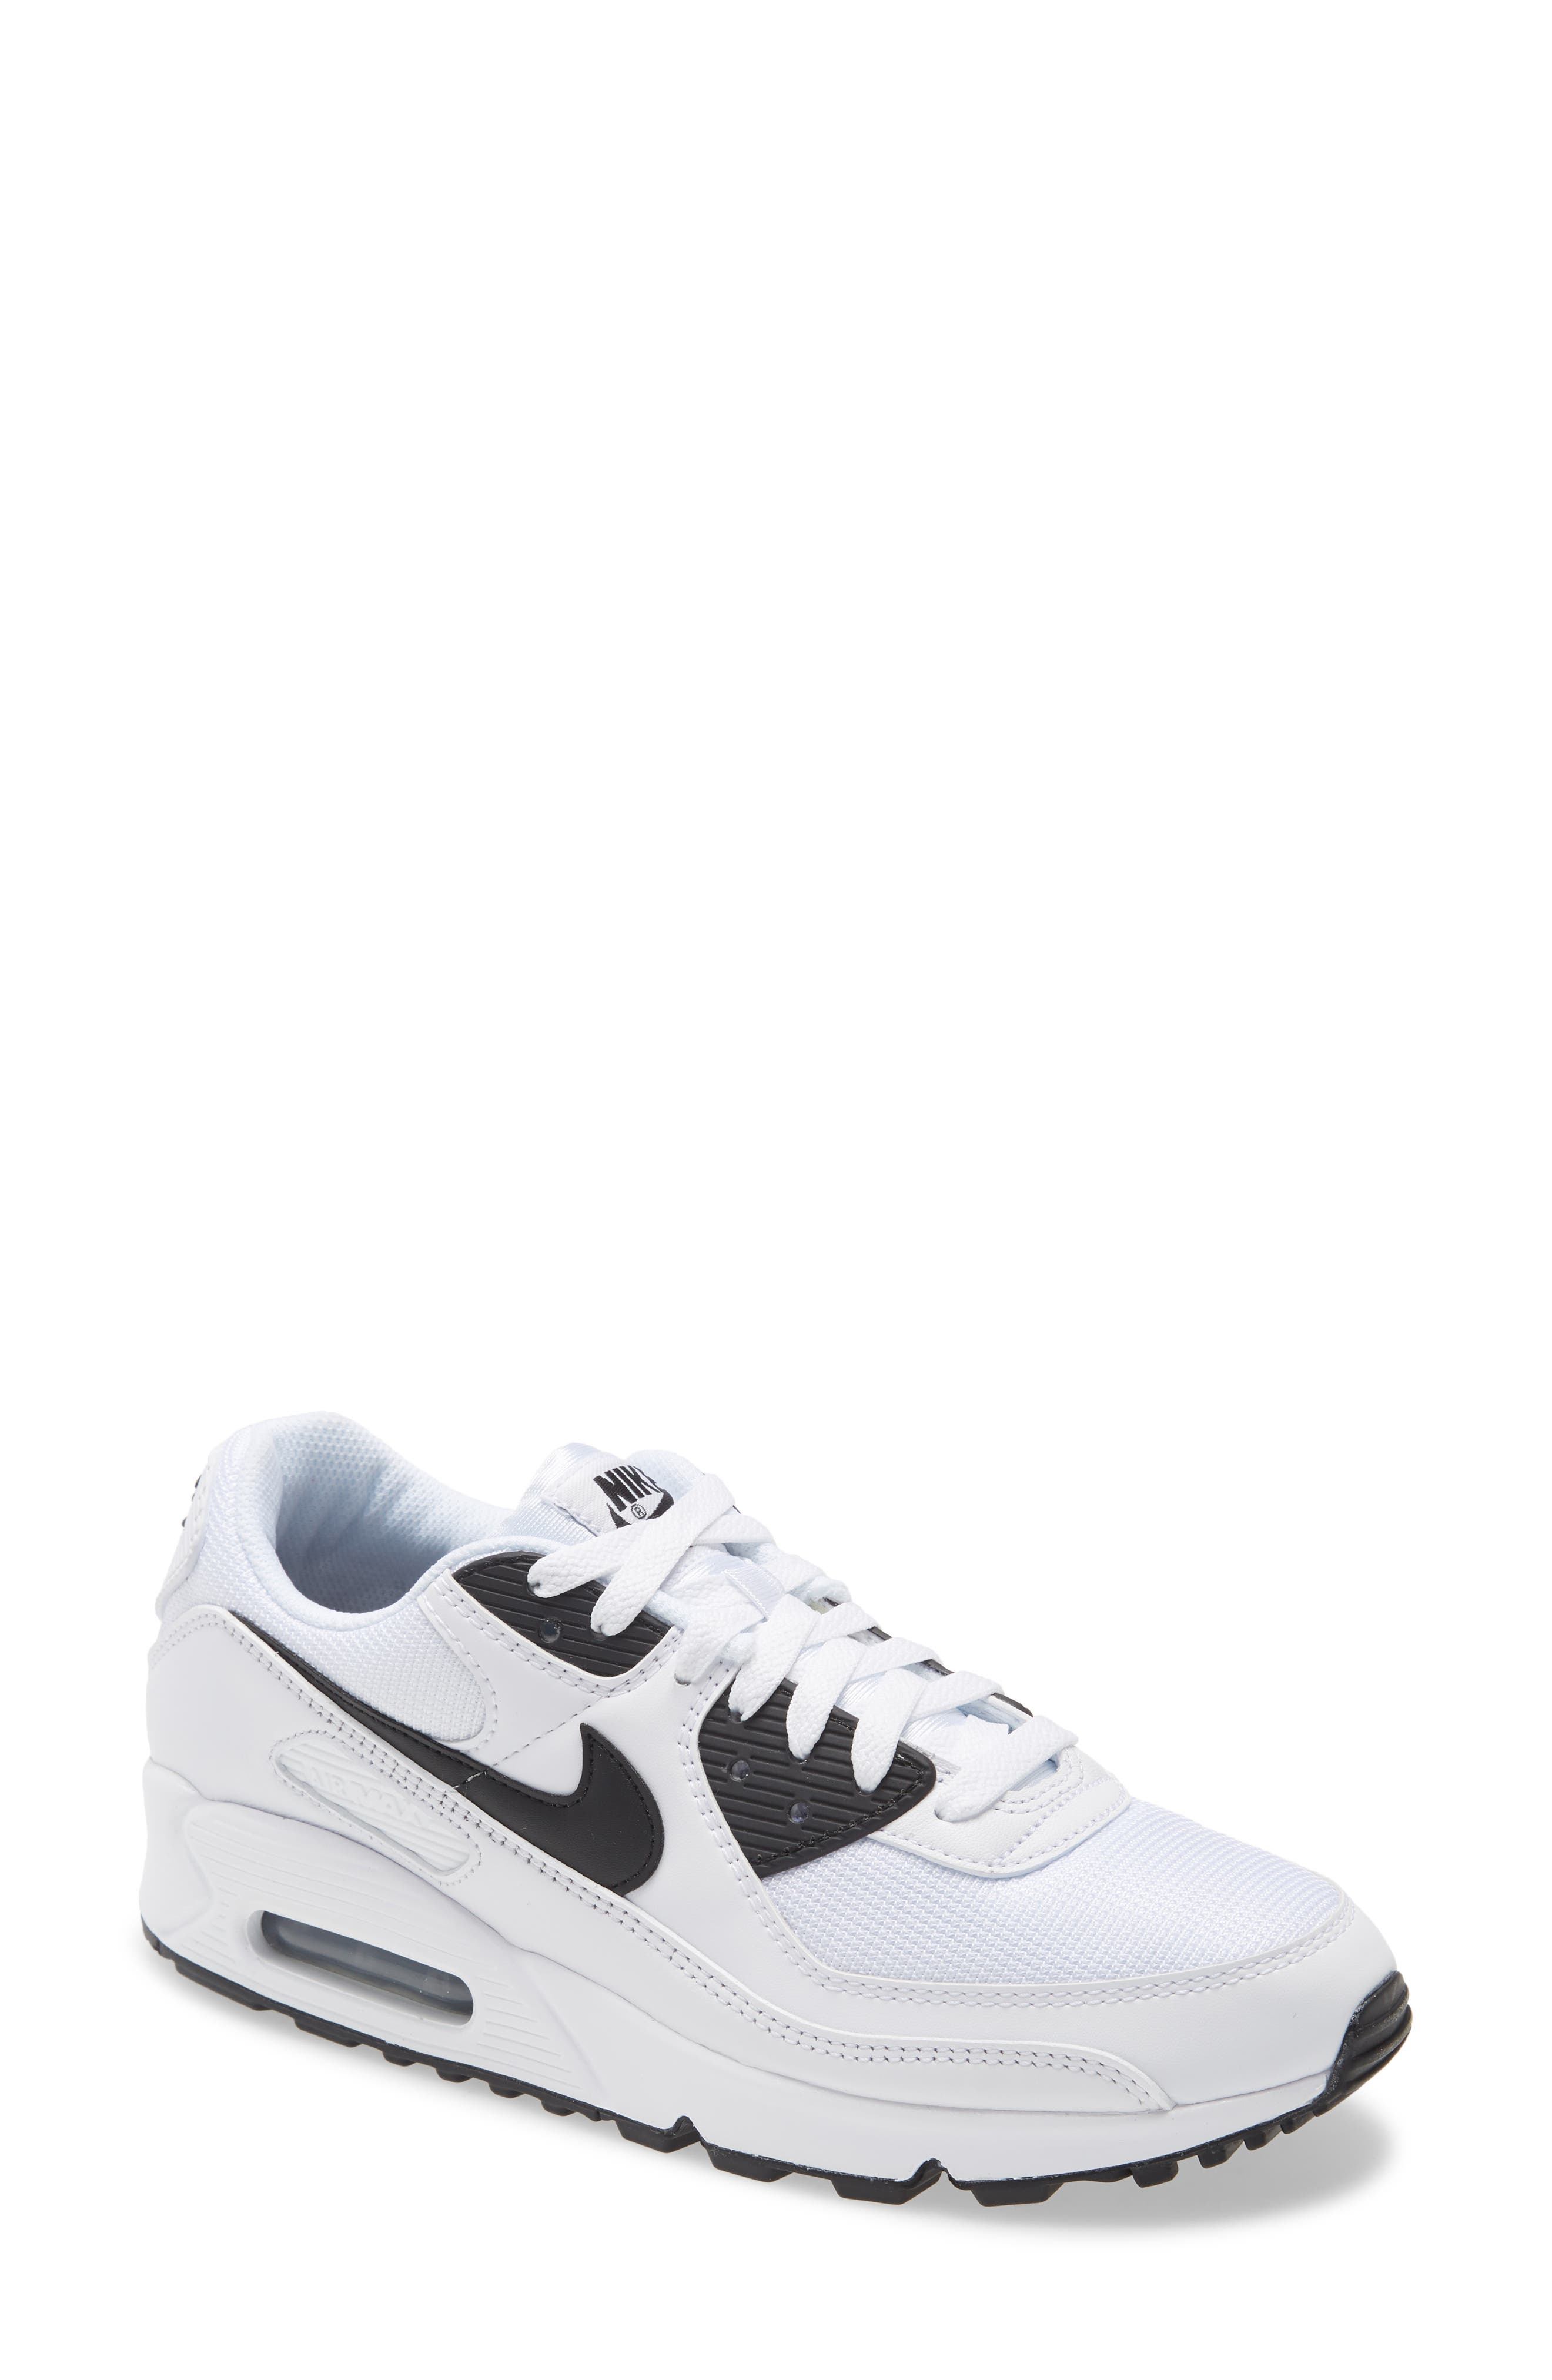 Men's Nike Air Max 90 Sneaker, Size 9 M 